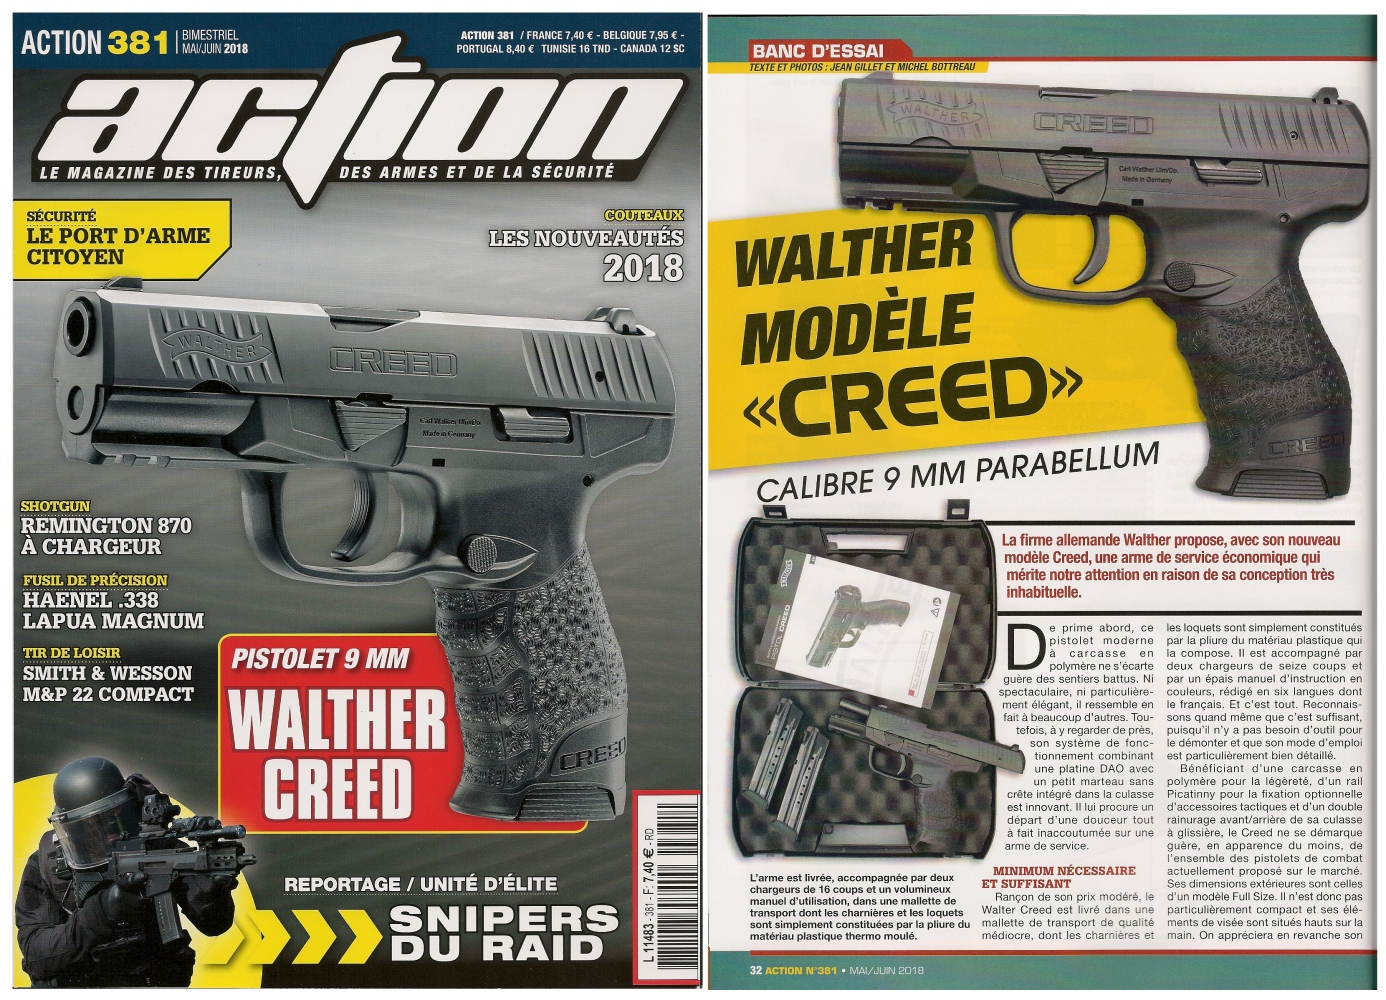 Le banc d’essai du pistolet Walther Creed a été publié sur 5 pages ½ dans le magazine Action n° 381 (mai/juin 2018). 